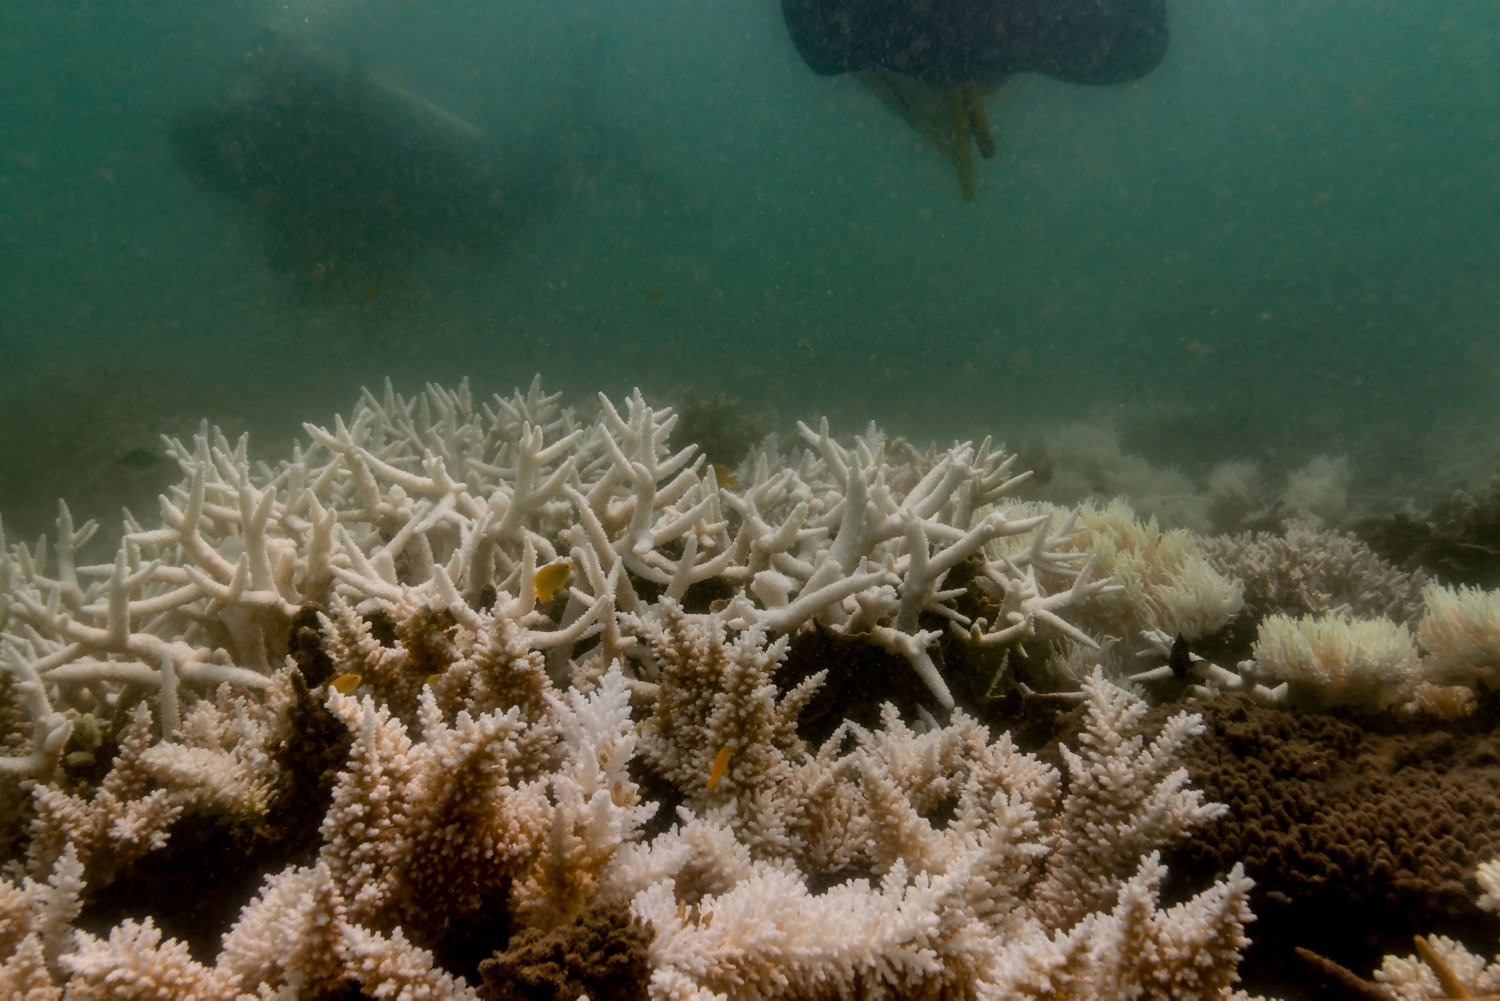 forskere i usa: verden oplever igen koralblegning